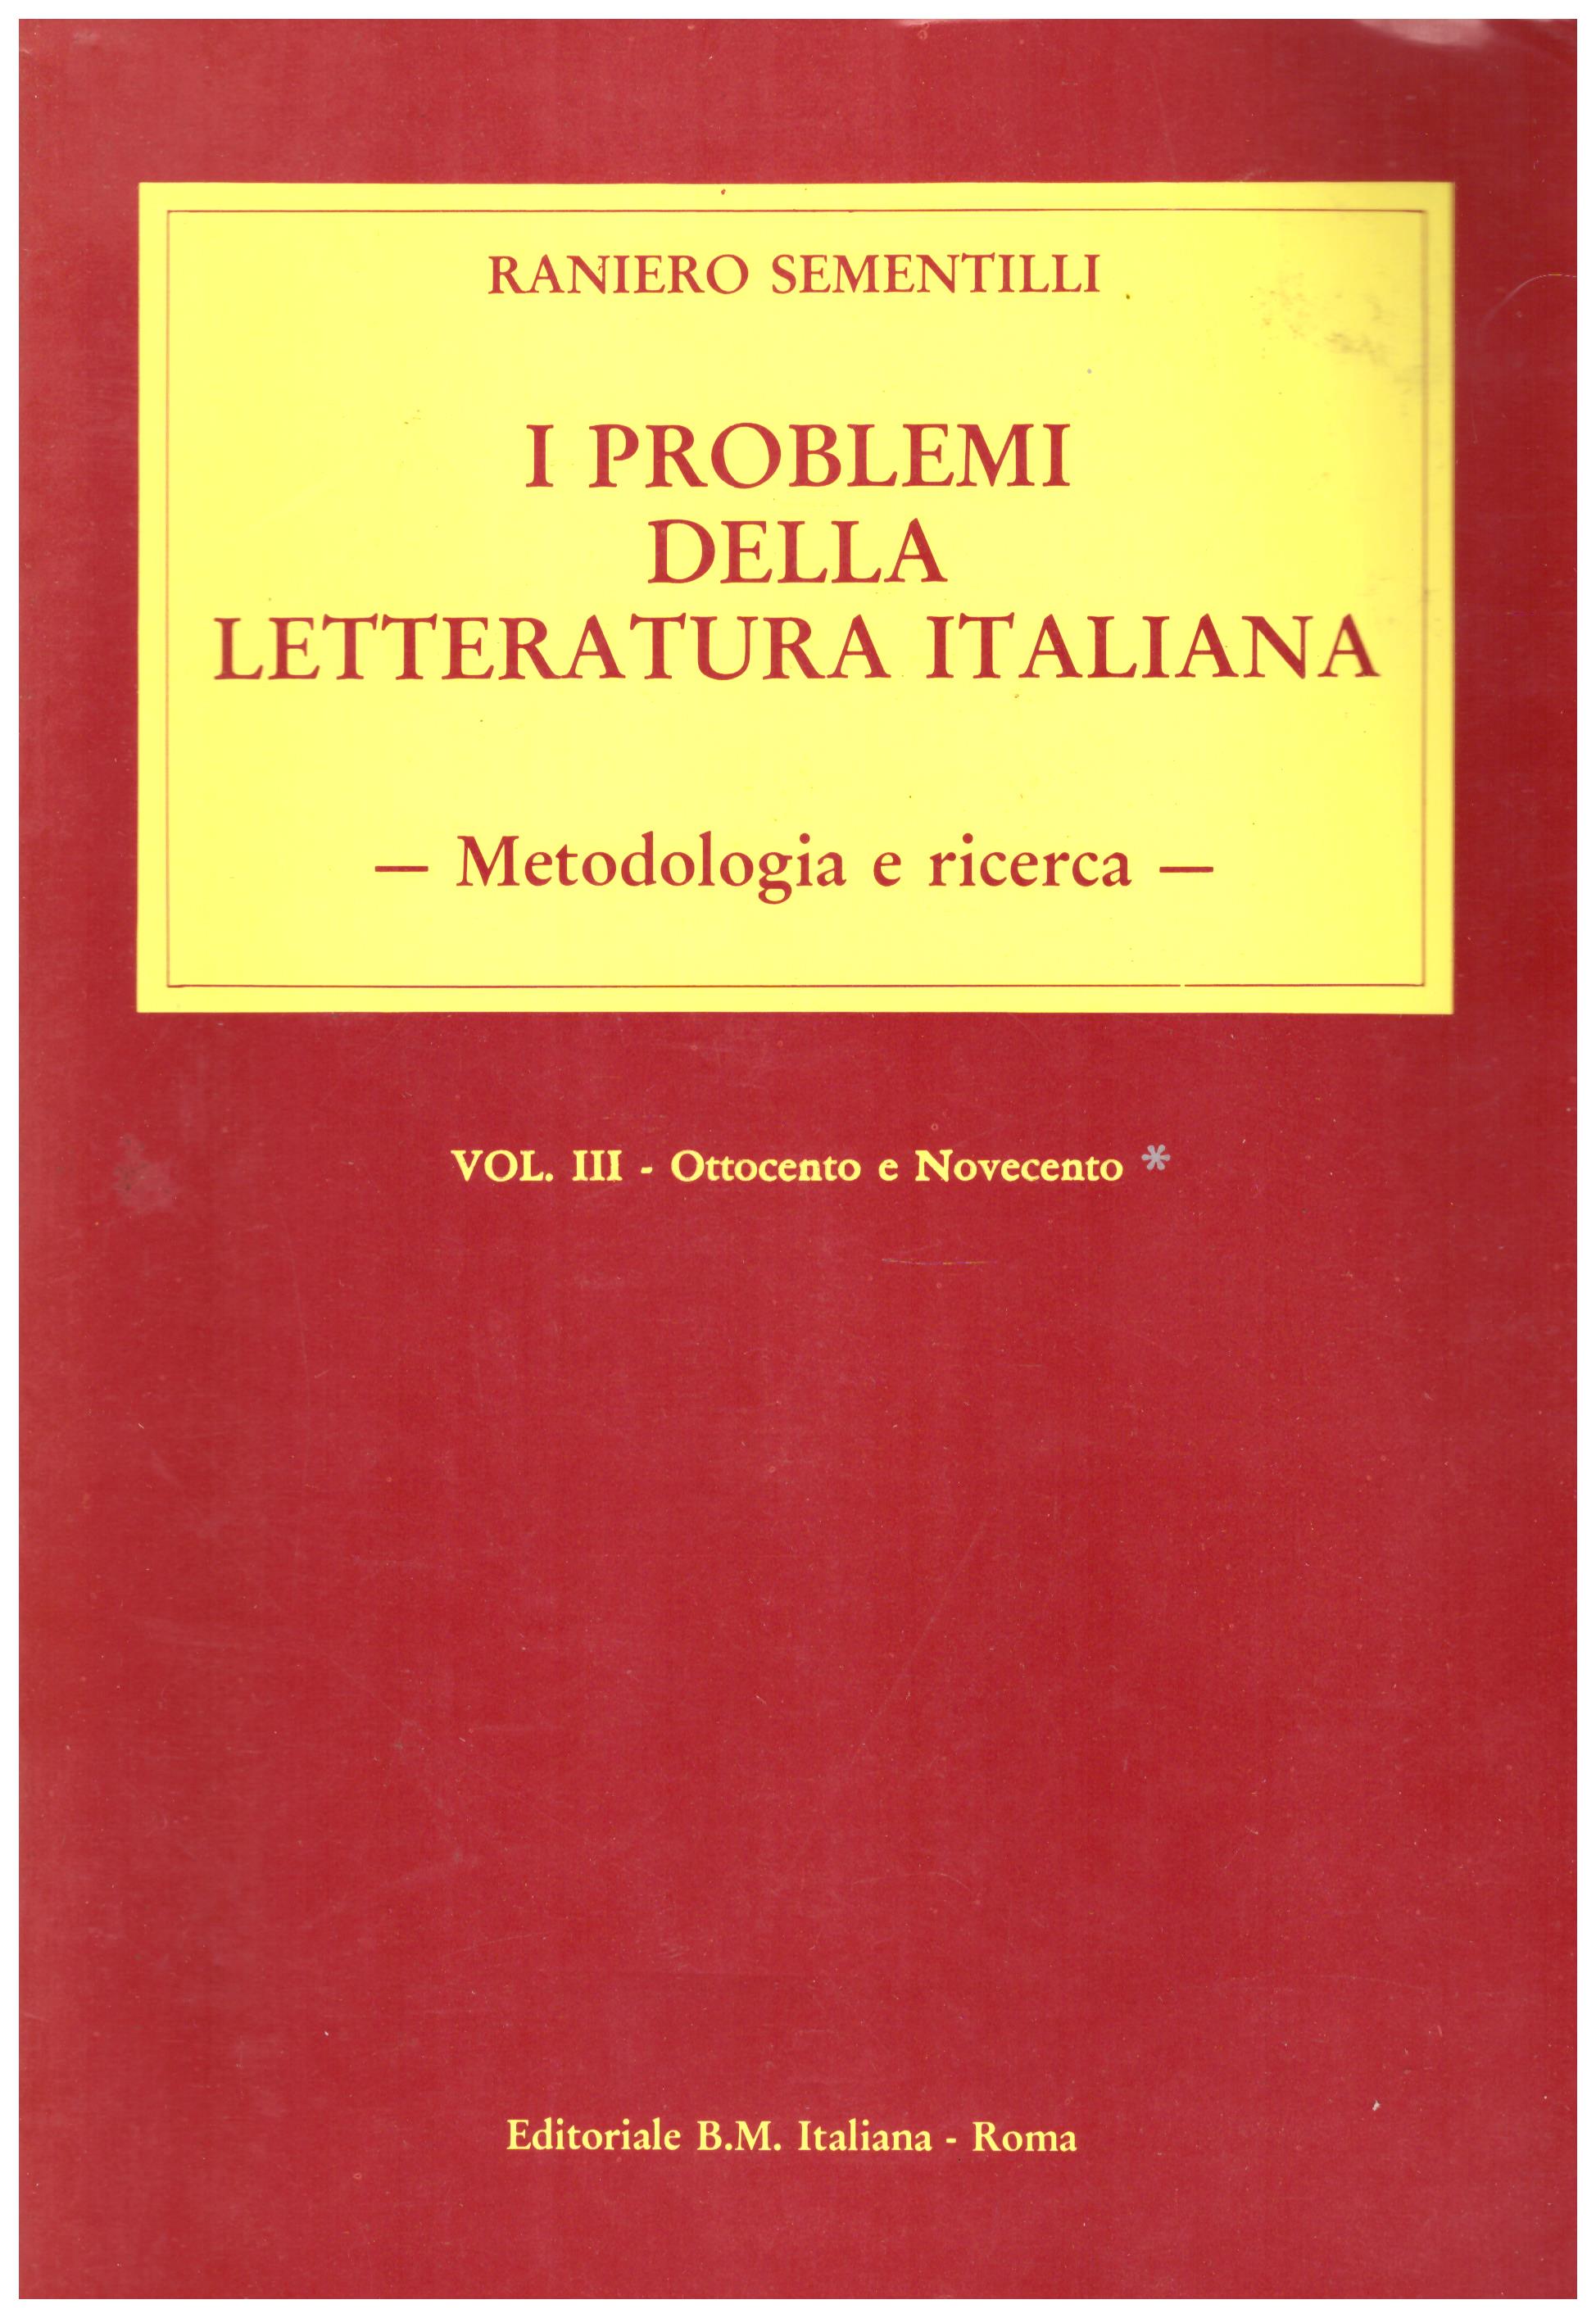 Titolo: I problemi della letteratura italiana VOL 3 autore: Raniero Sementilli editore: editoriale Bm